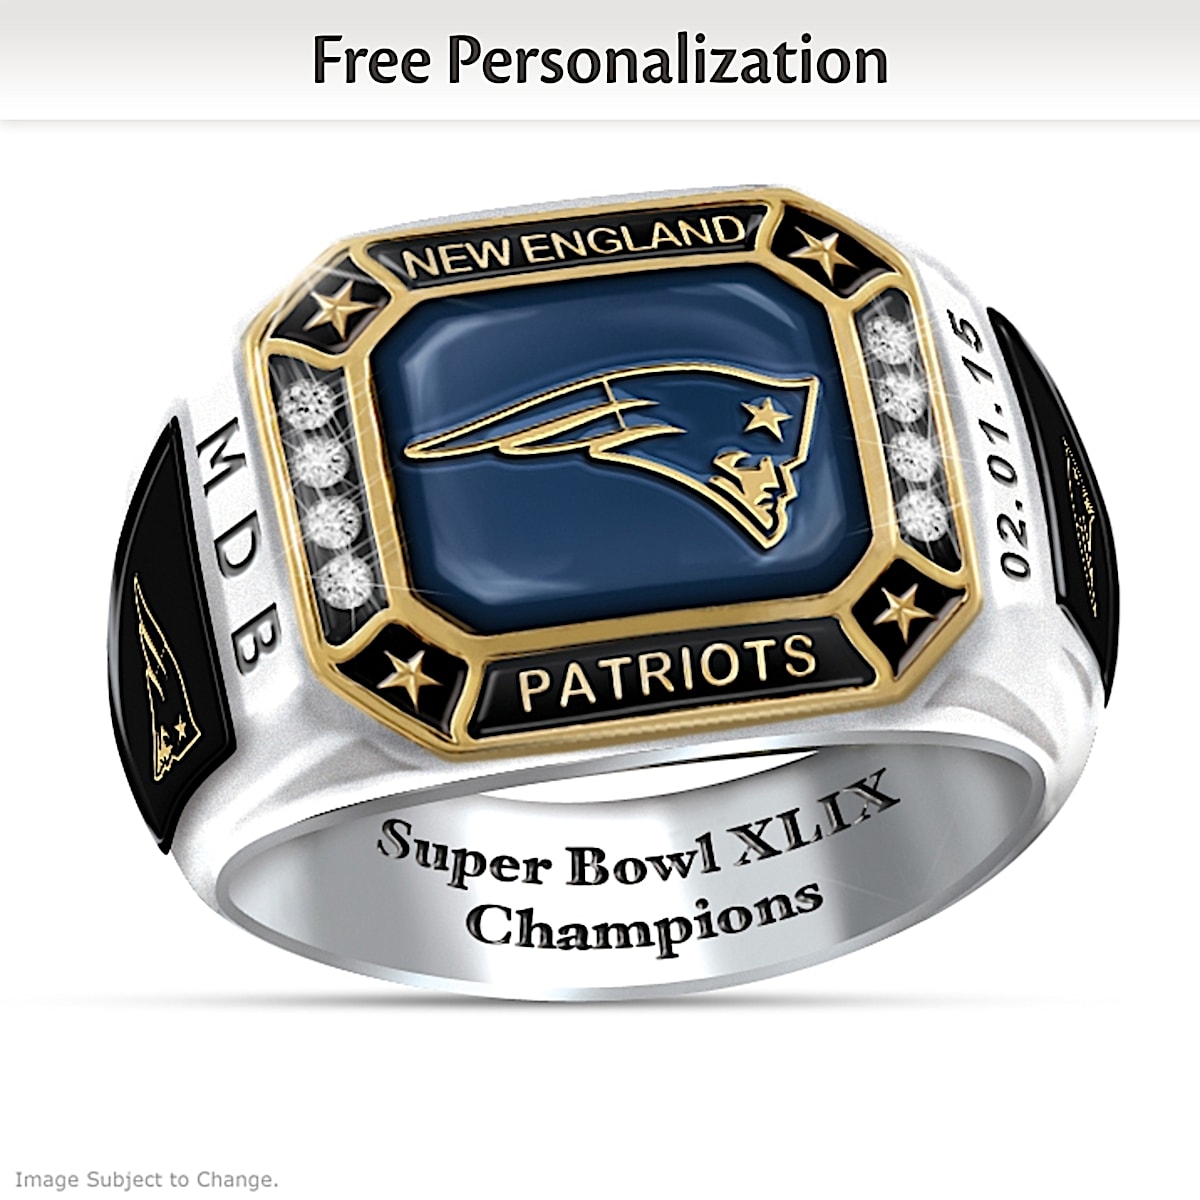 Patriots receive Super Bowl XLIX championship rings